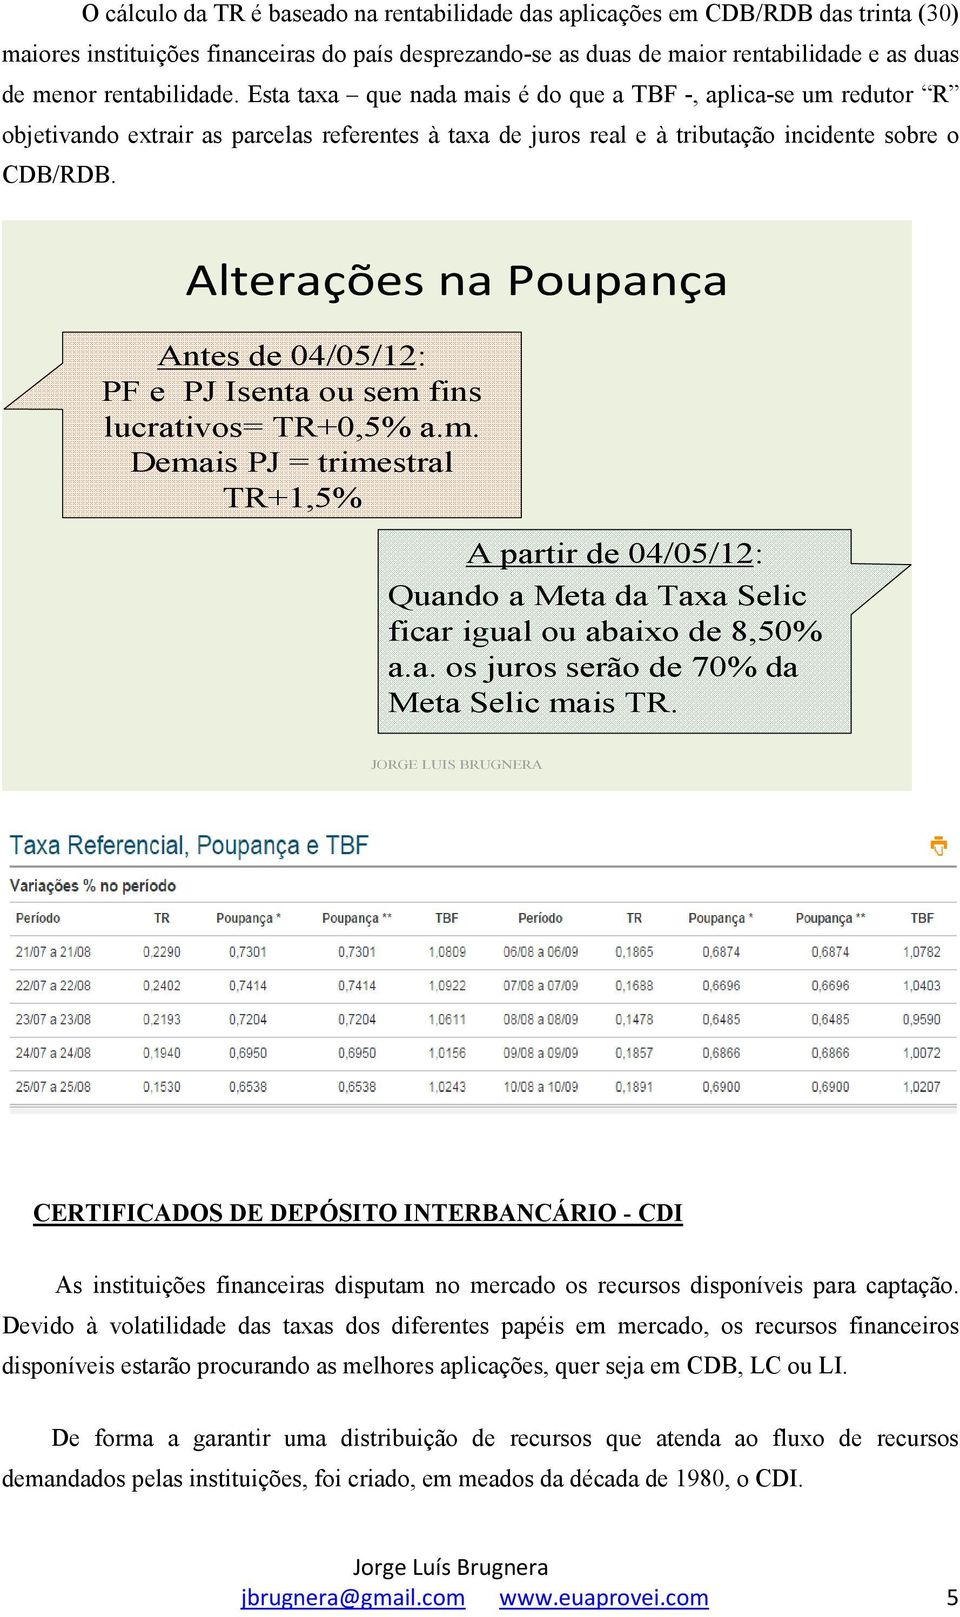 Alterações na Poupança Antes de 04/05/12: PF e PJ Isenta ou sem fins lucrativos= TR+0,5% a.m. Demais PJ = trimestral TR+1,5% A partir de 04/05/12: Quando a Meta da Taxa Selic ficar igual ou abaixo de 8,50% a.